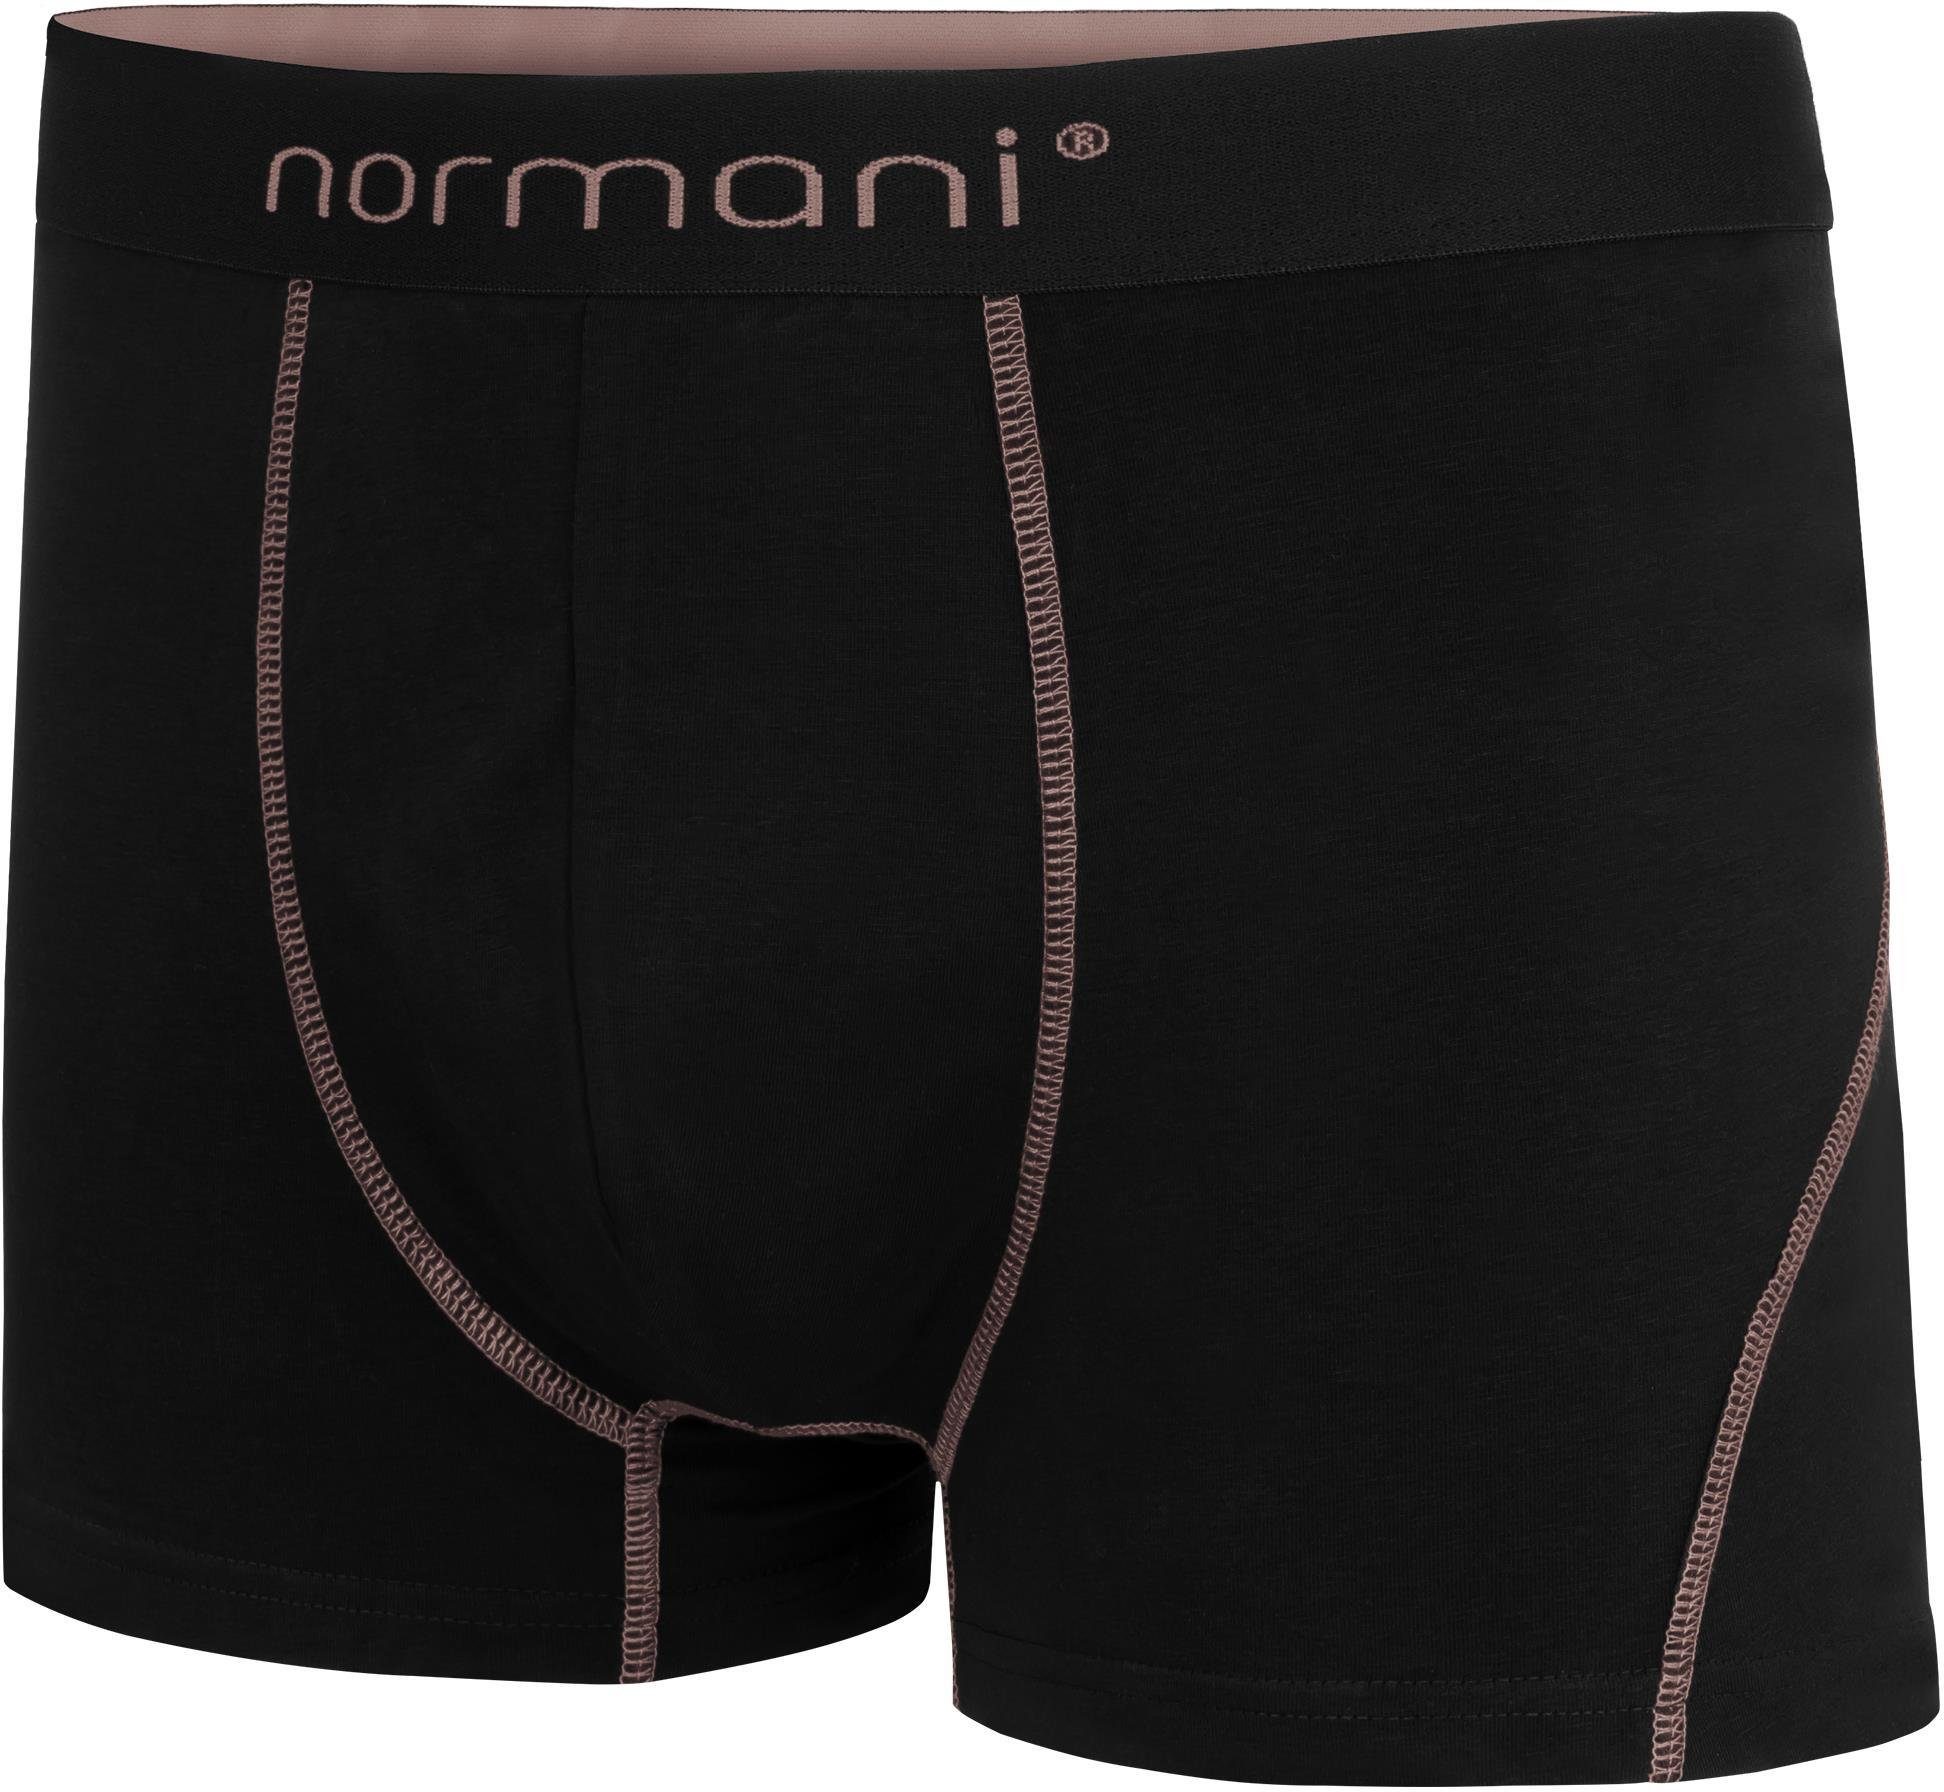 x für Männer aus normani 12 Baumwolle Herren Unterhose atmungsaktiver Baumwoll-Boxershorts Boxershorts Lachs